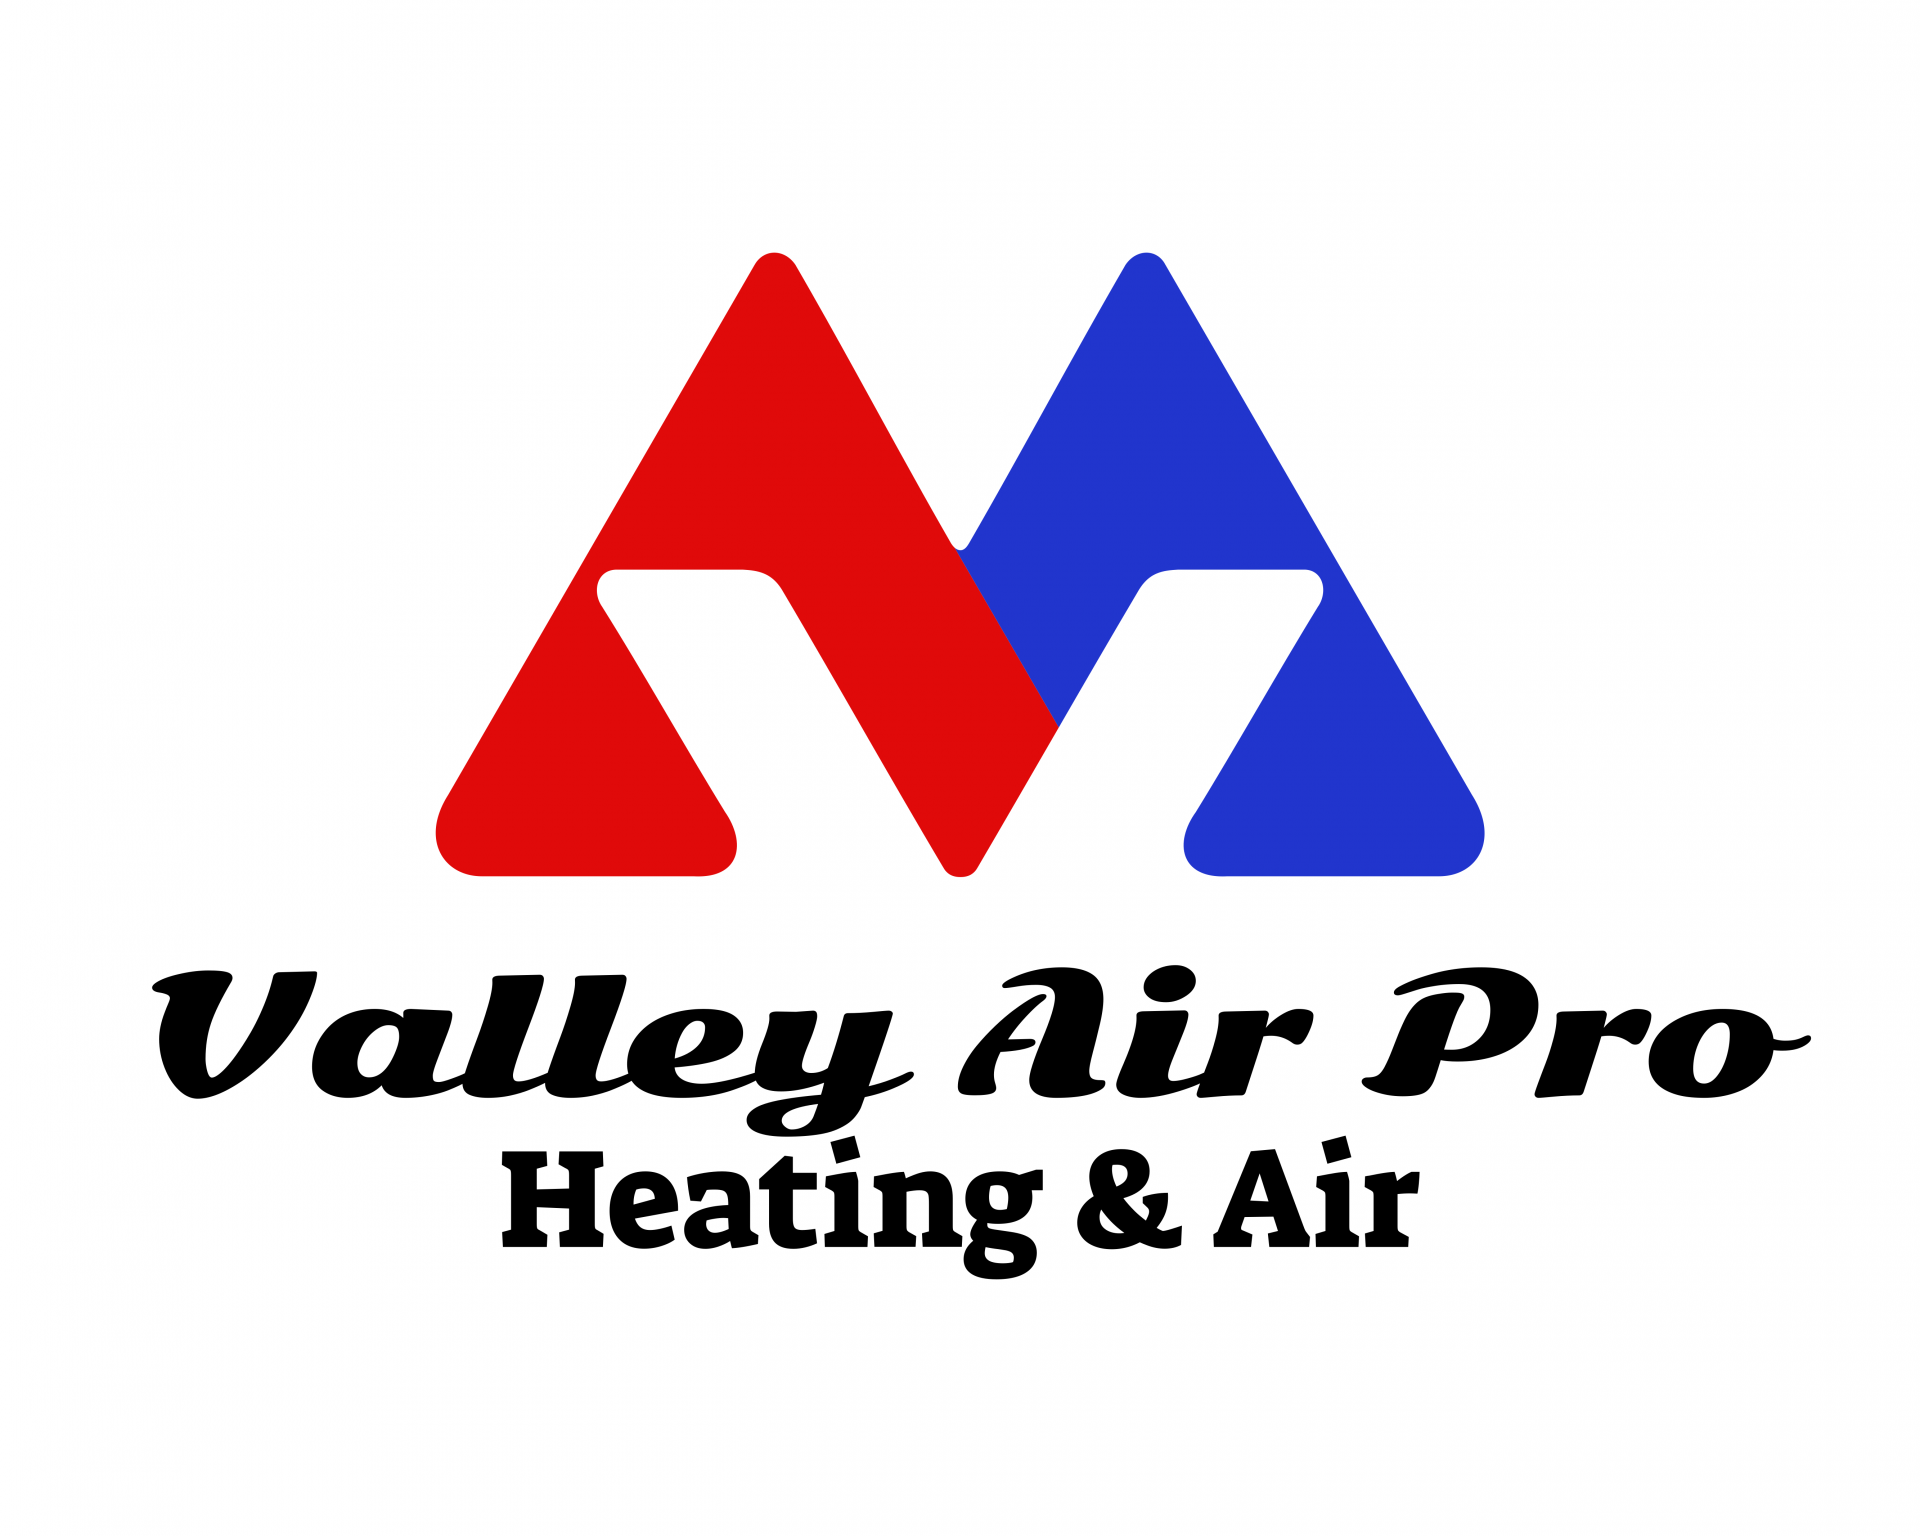 Valley Air Pro company logo